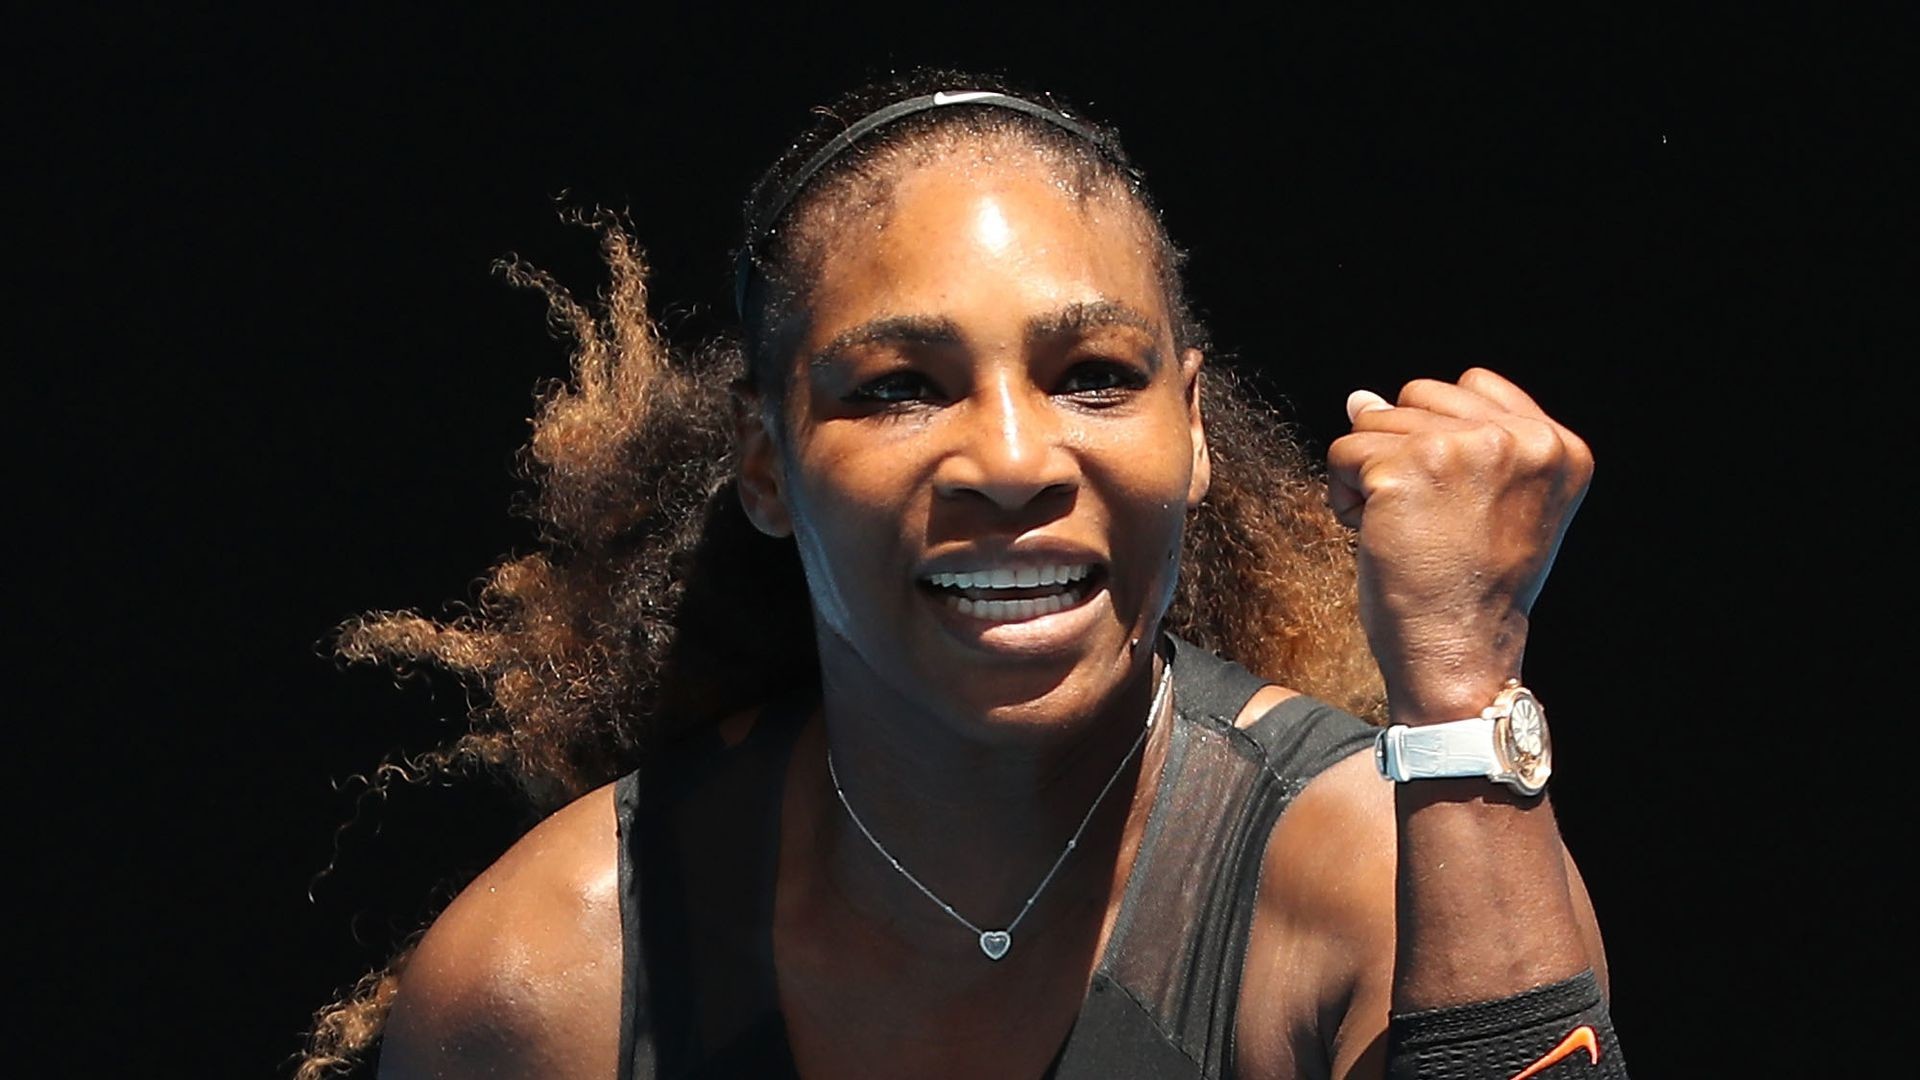 1920x1080 Tennis-Rekord mit Baby: Serena Williams siegte schwanger! | Promiflash.de